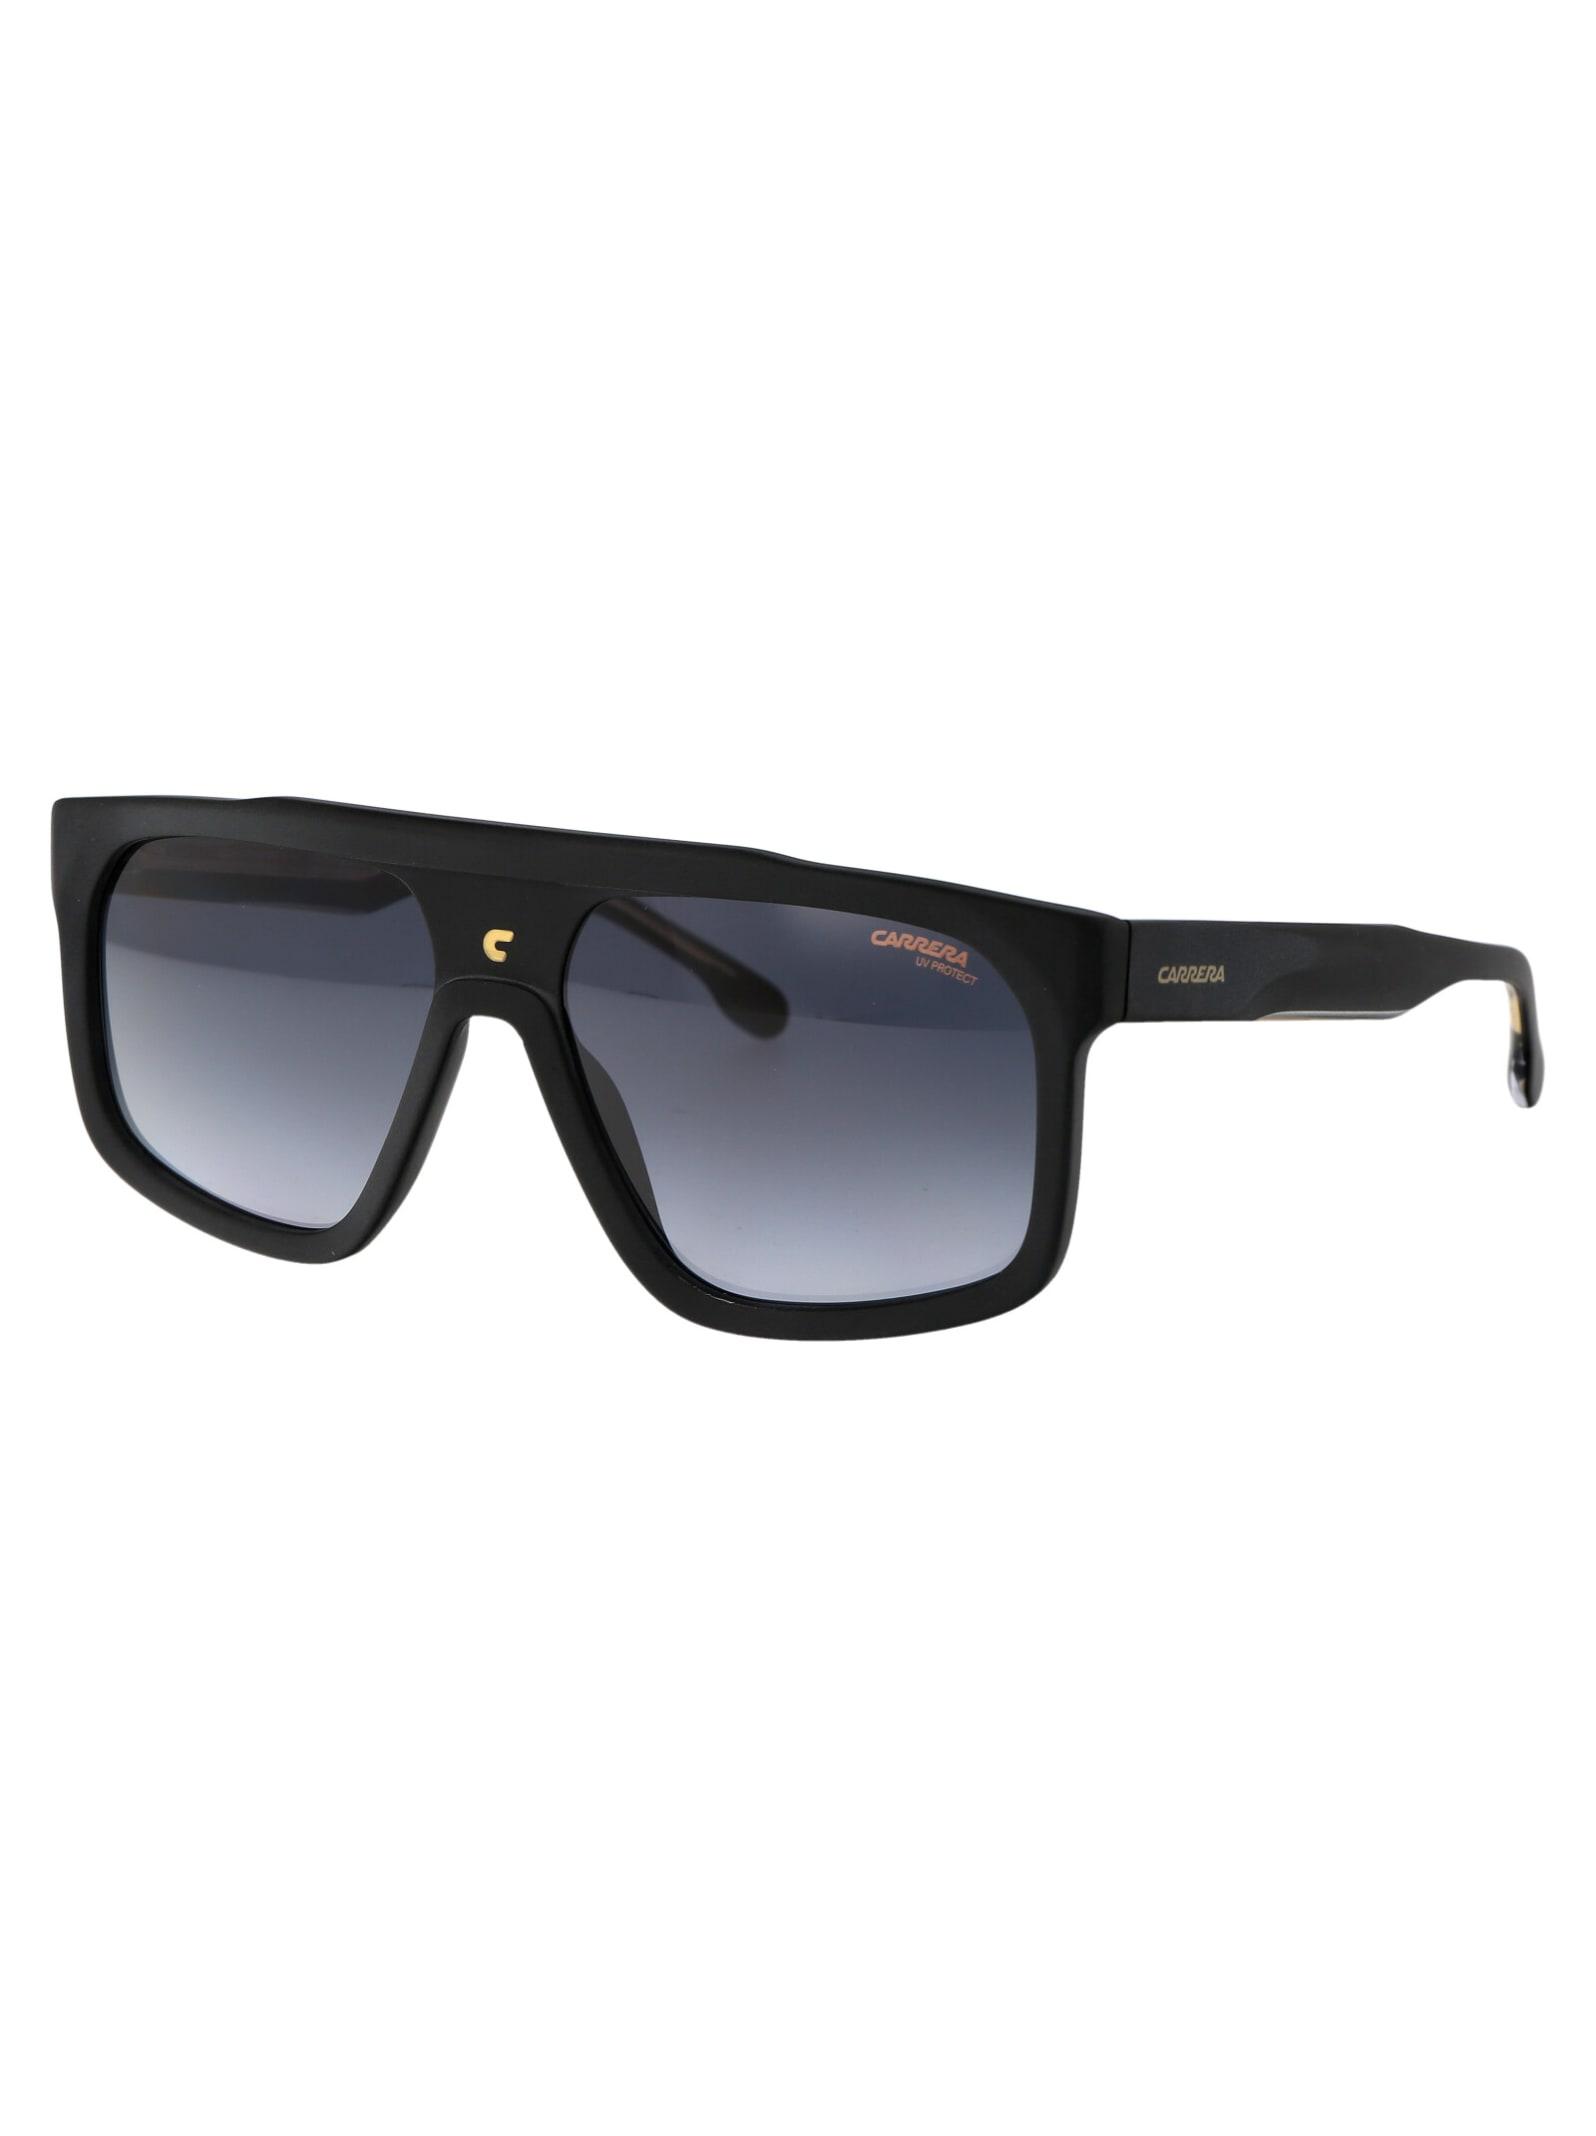 Carrera 1061/s Sunglasses in Blue | Lyst